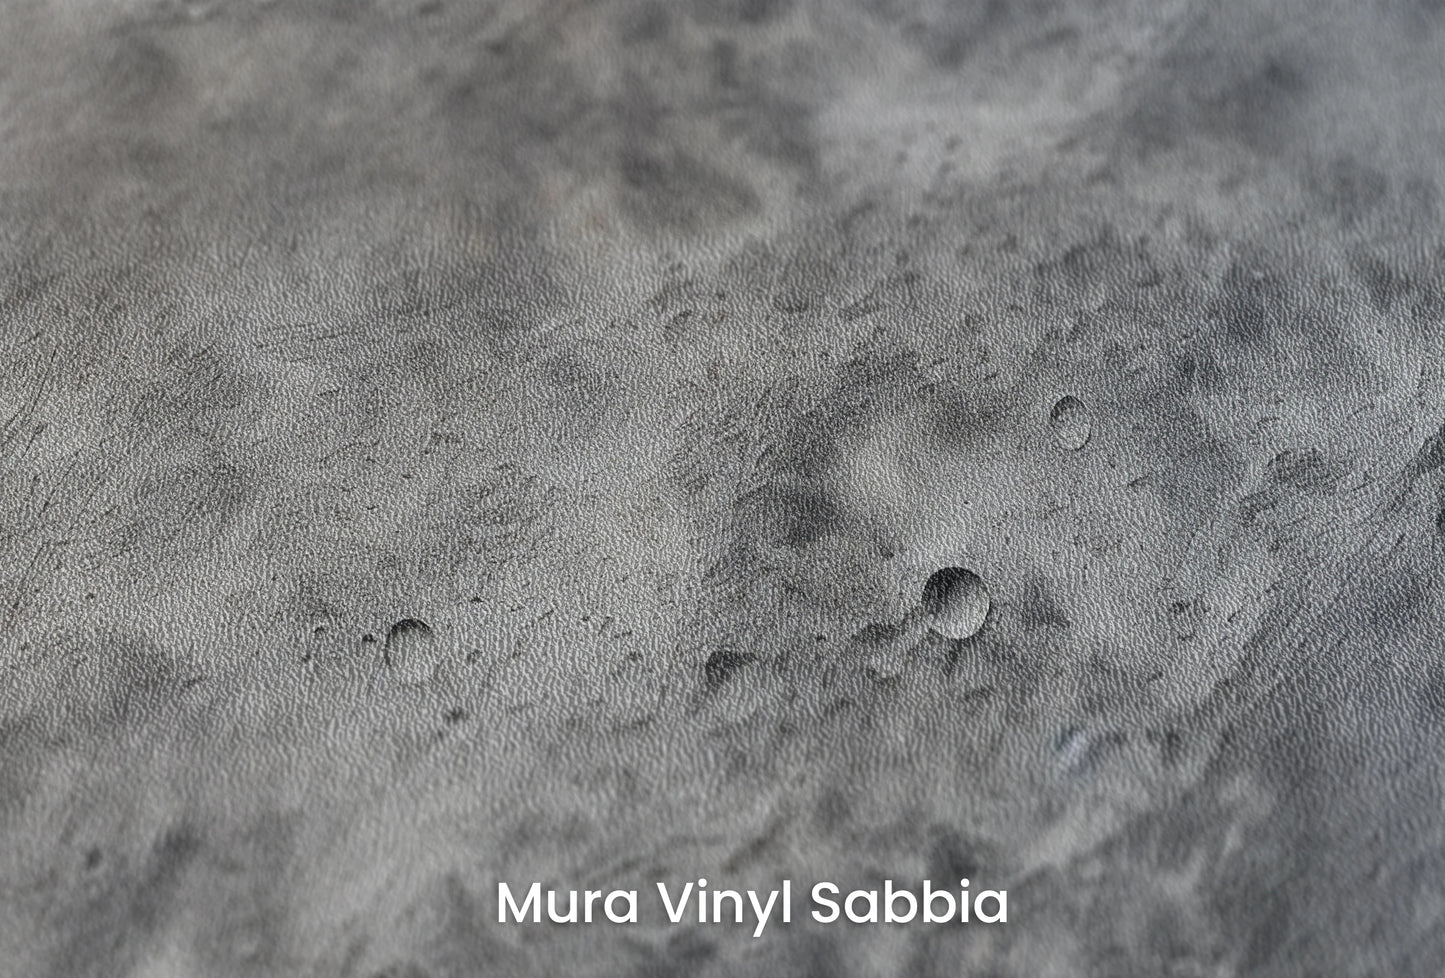 Zbliżenie na artystyczną fototapetę o nazwie Moon's Tranquility #2 na podłożu Mura Vinyl Sabbia struktura grubego ziarna piasku.